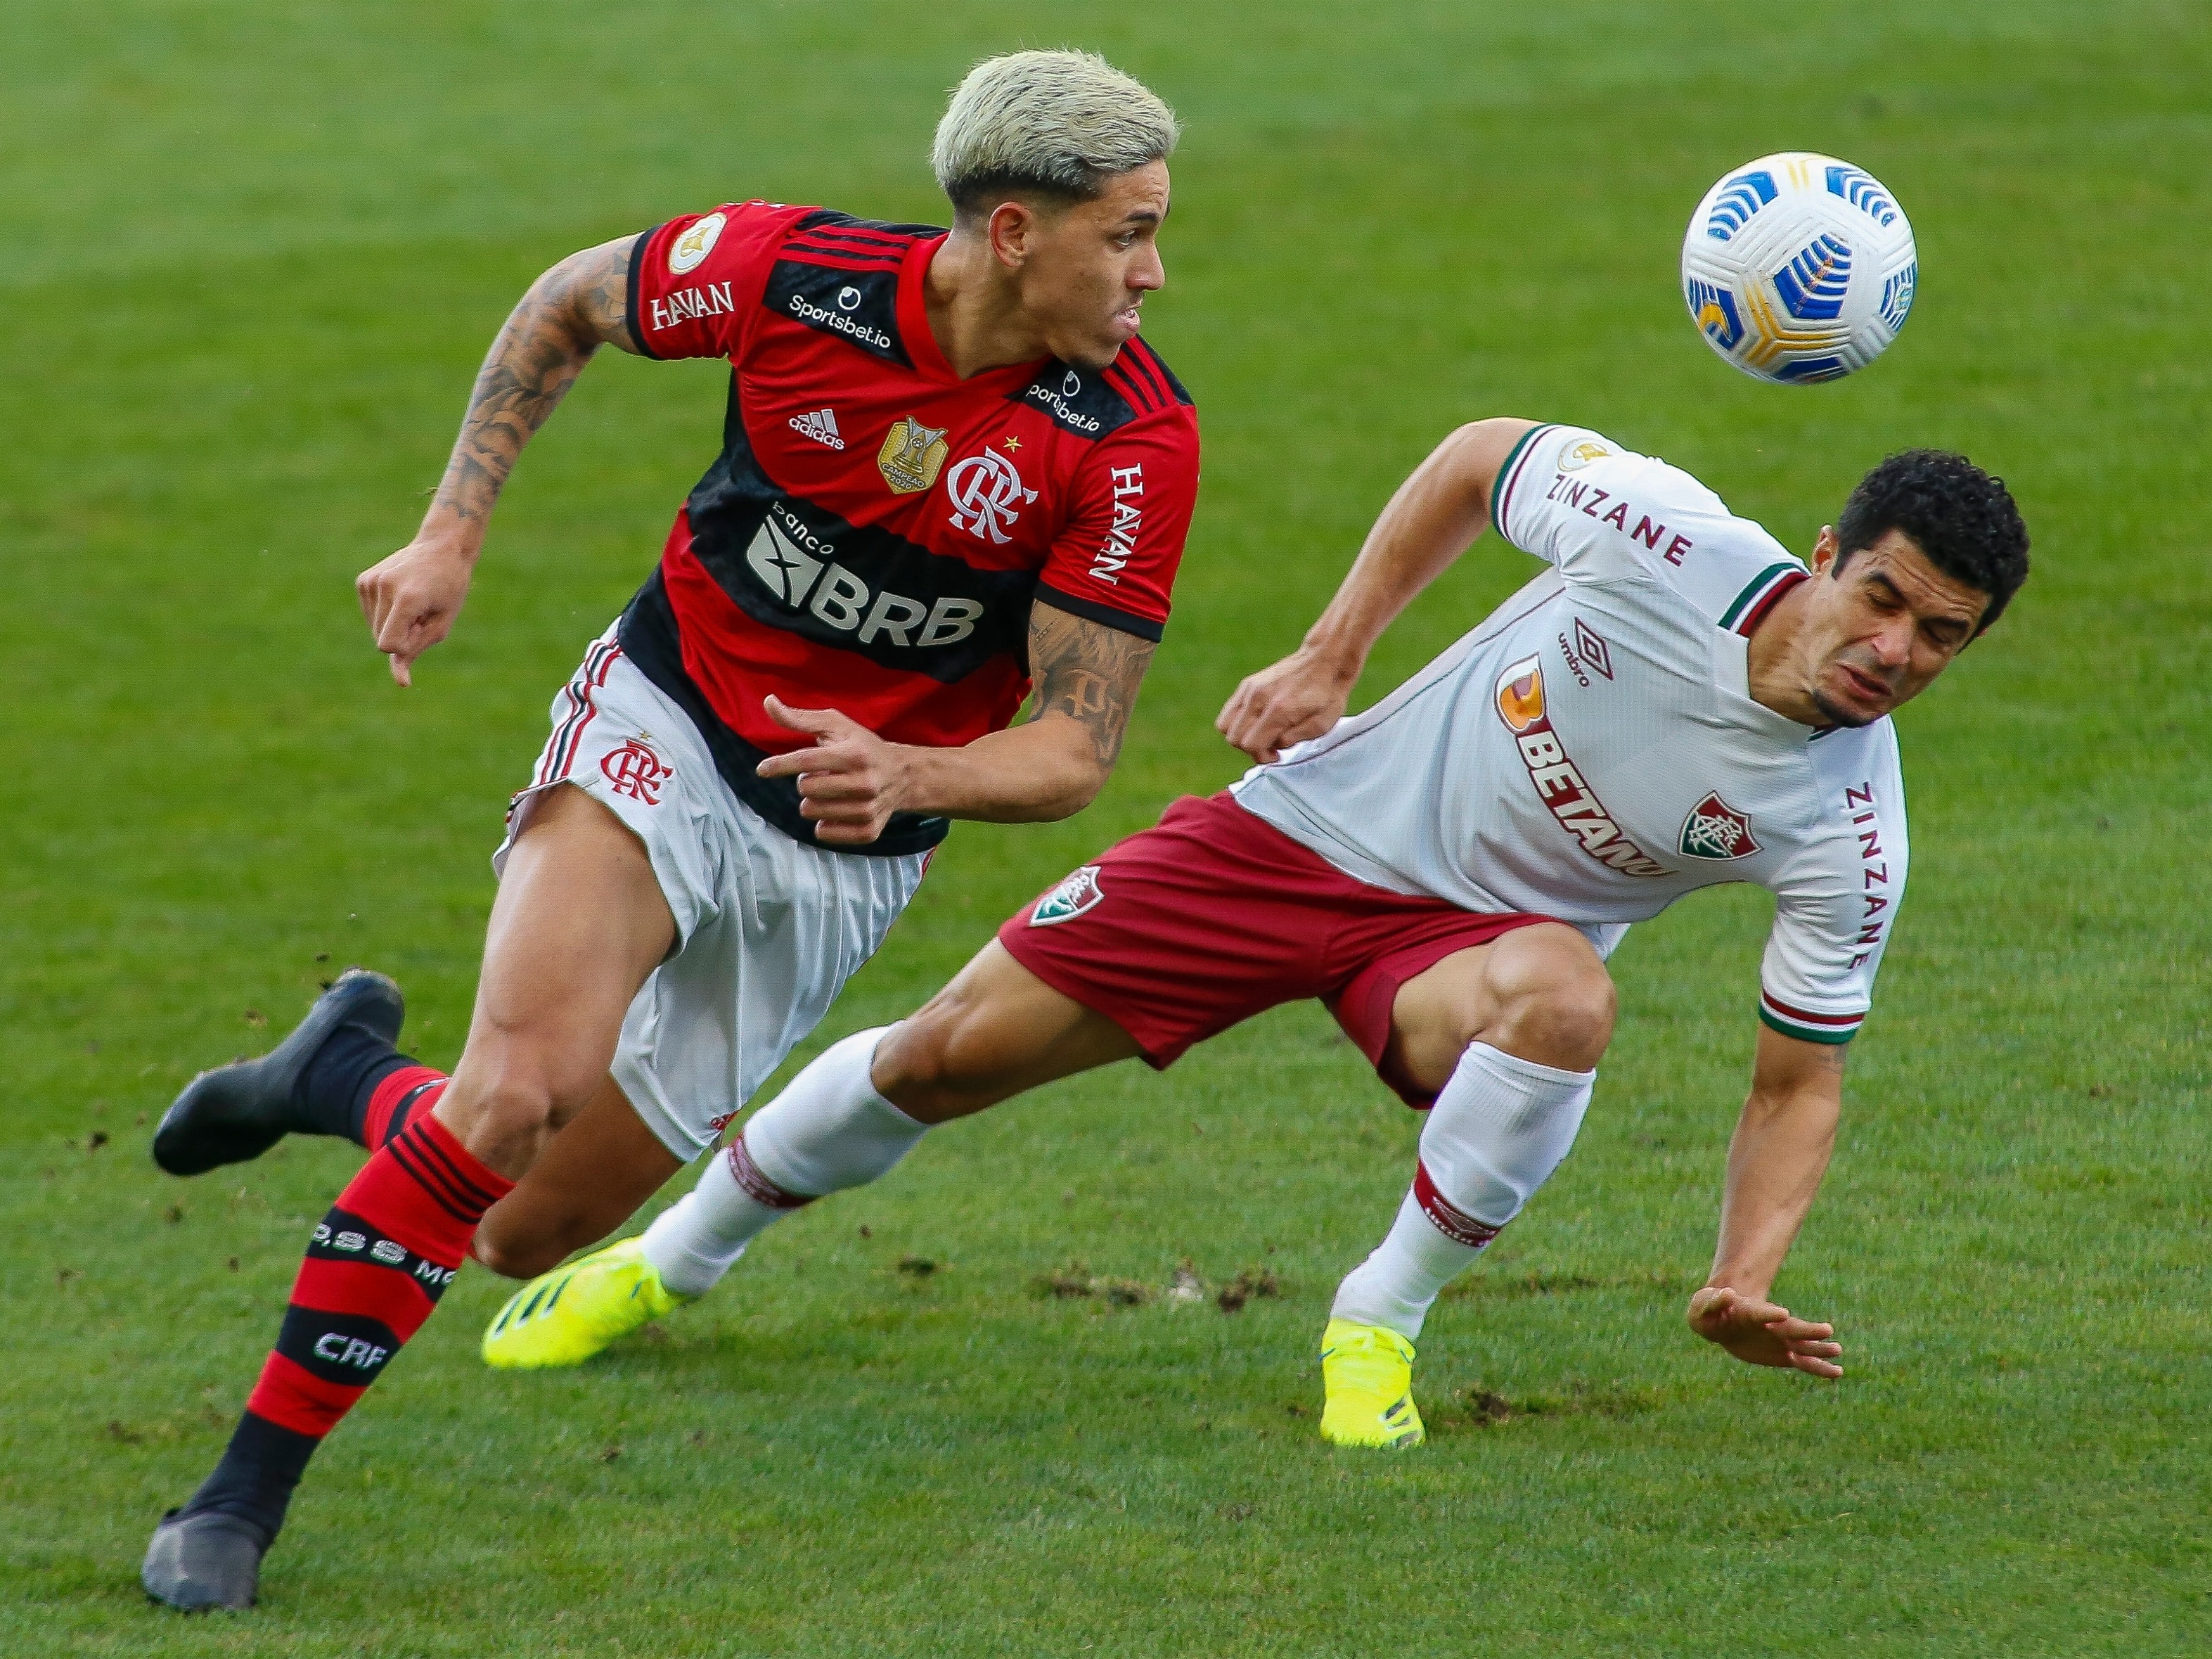 Flamengo x Fluminense: Prováveis escalações, arbitragem